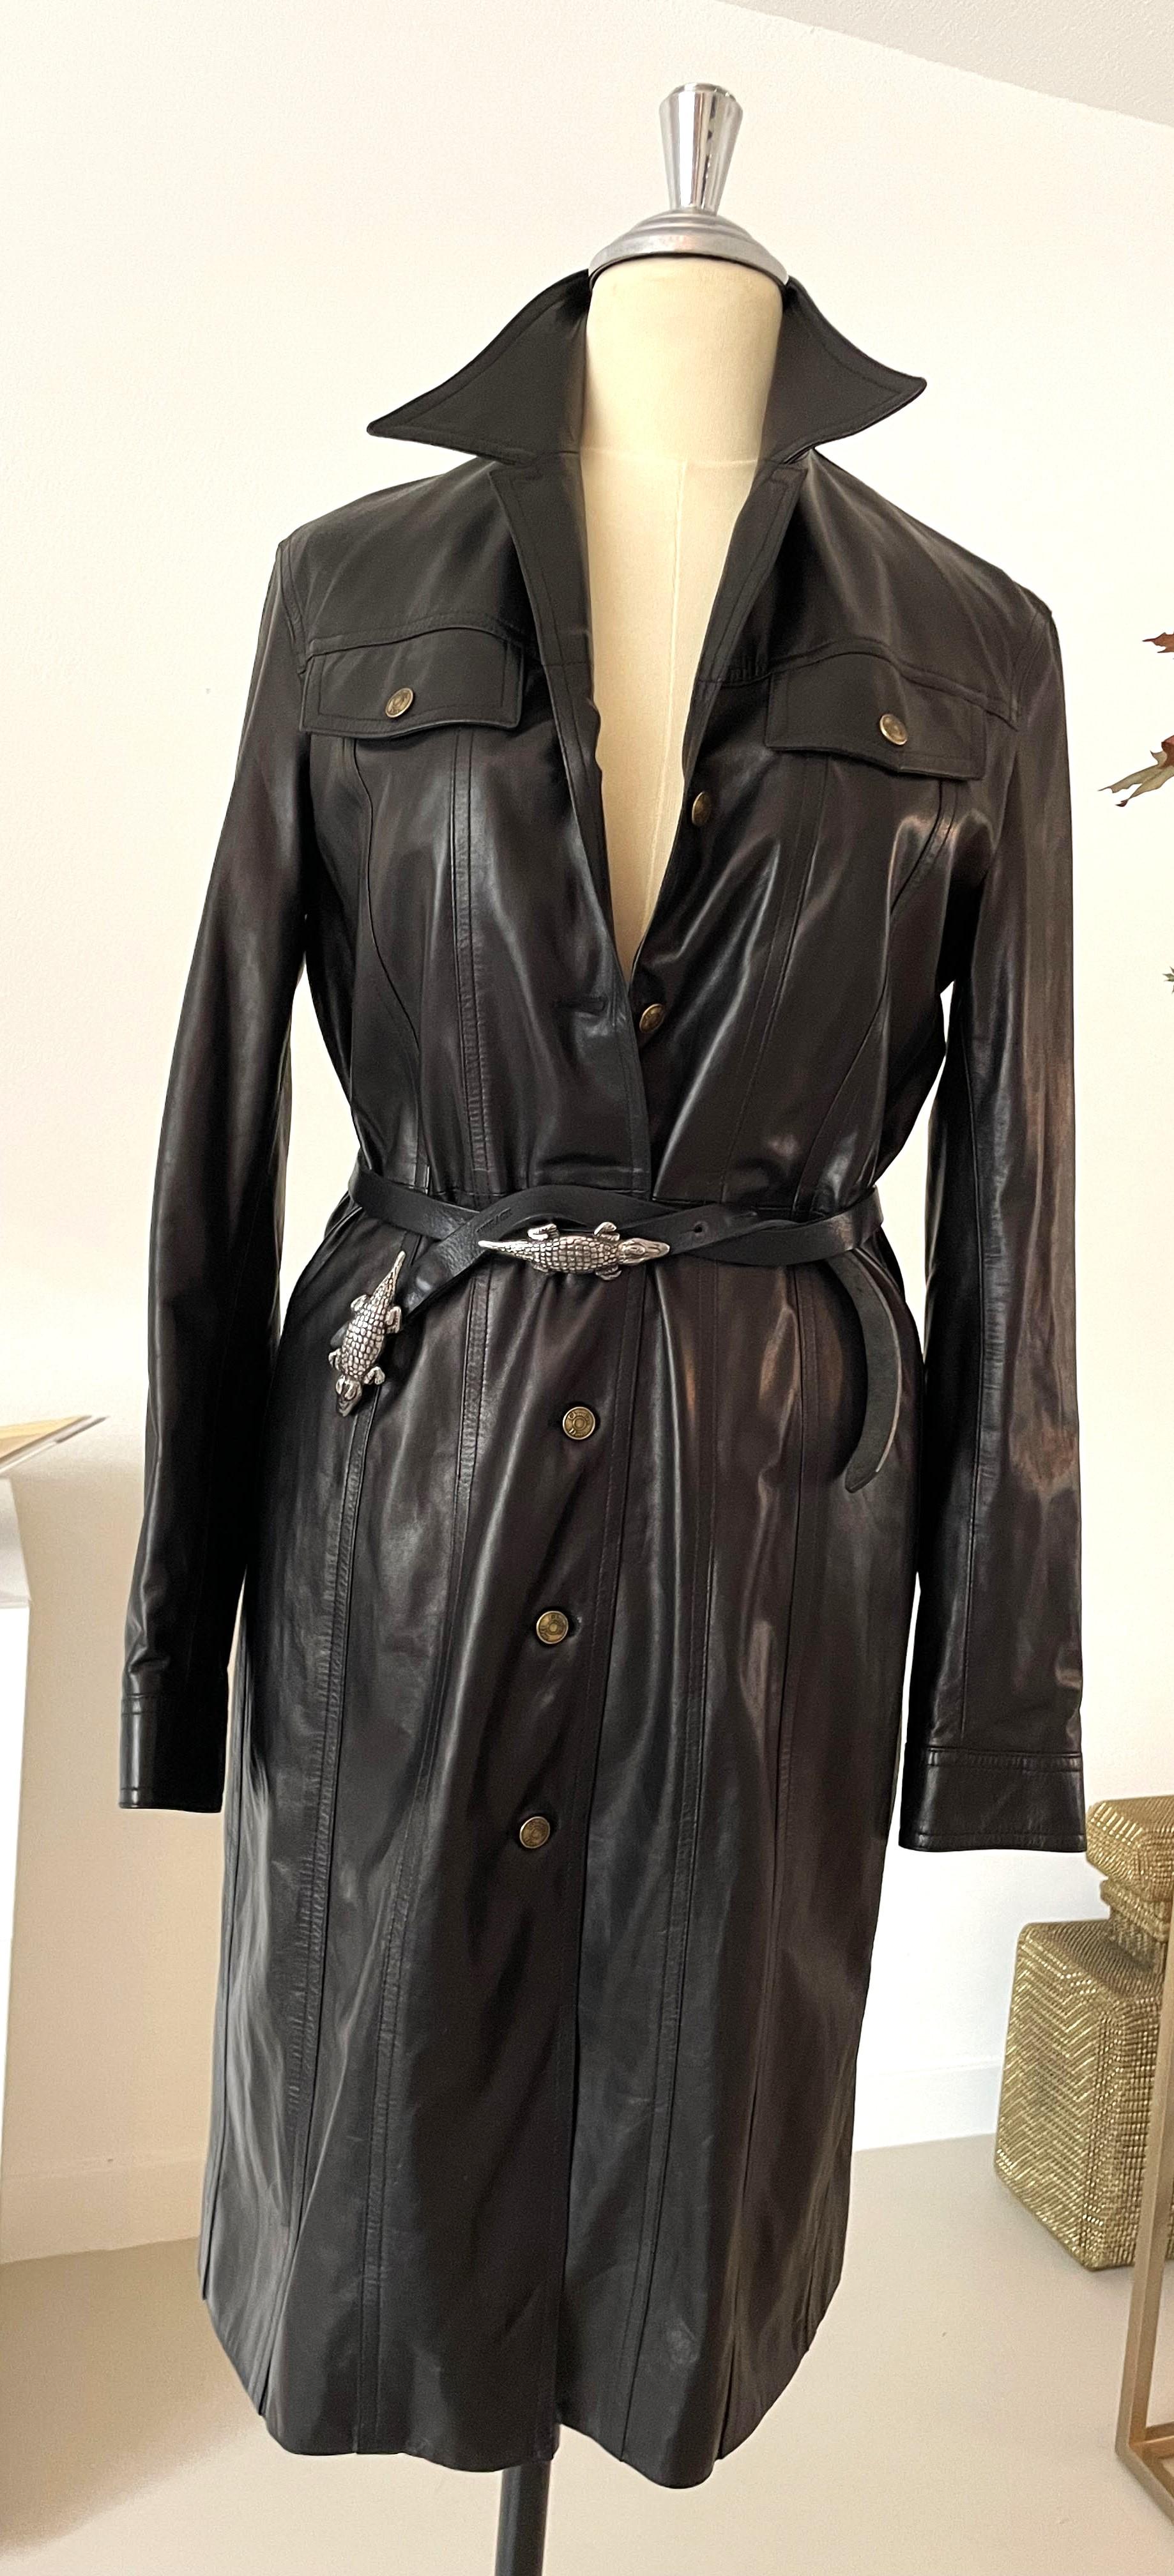 Dieser außergewöhnliche, erstklassige und exzellente schwarze Lammledermantel von Christian Dior aus der Vintage-Ära der 90er Jahre ist ein sehr begehrtes und stilvolles Modeobjekt. Mit einem schönen Gürtel kann man es sogar als Kleid tragen!

Ein